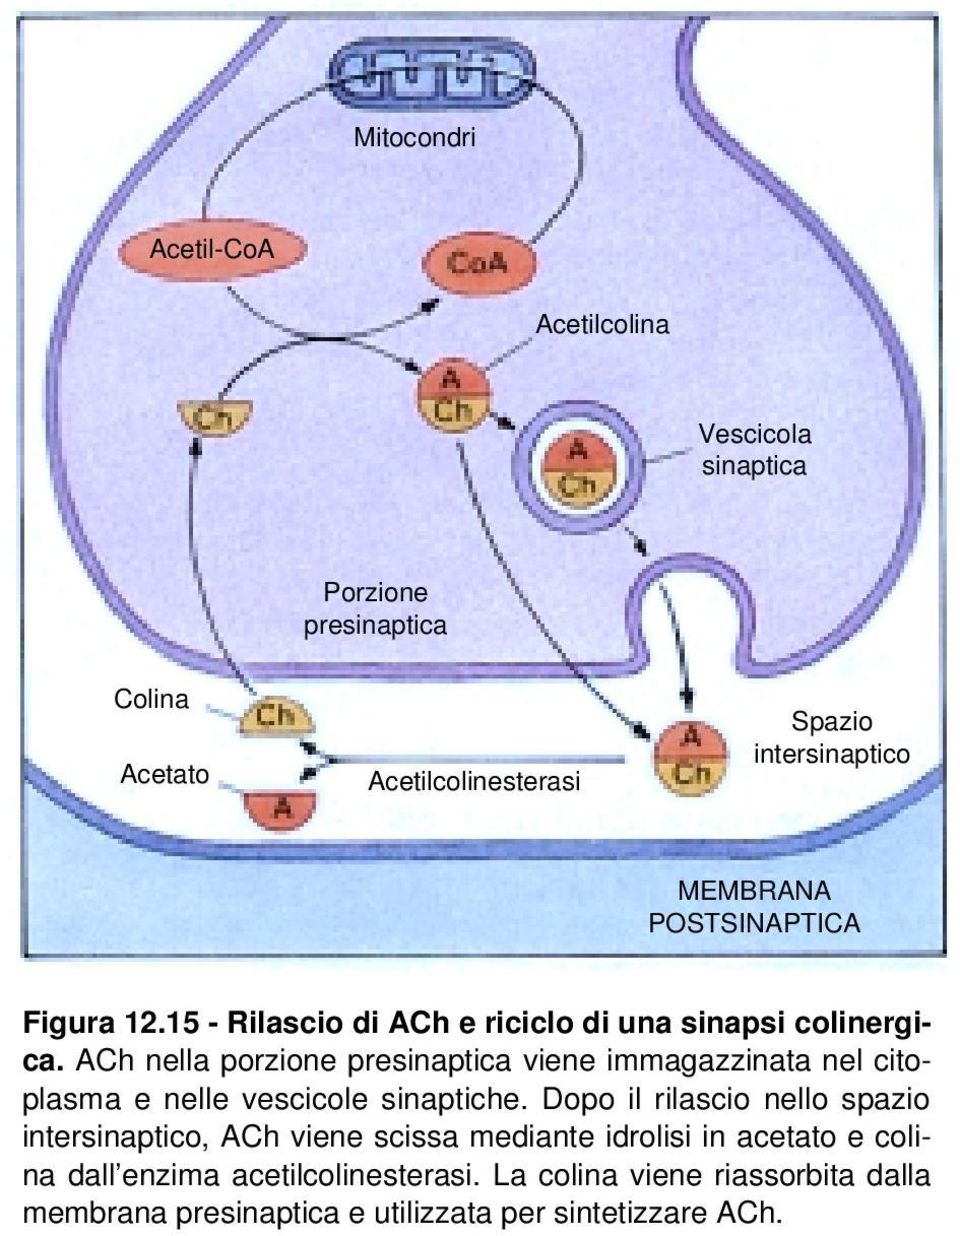 ACh nella porzione presinaptica viene immagazzinata nel citoplasma e nelle vescicole sinaptiche.